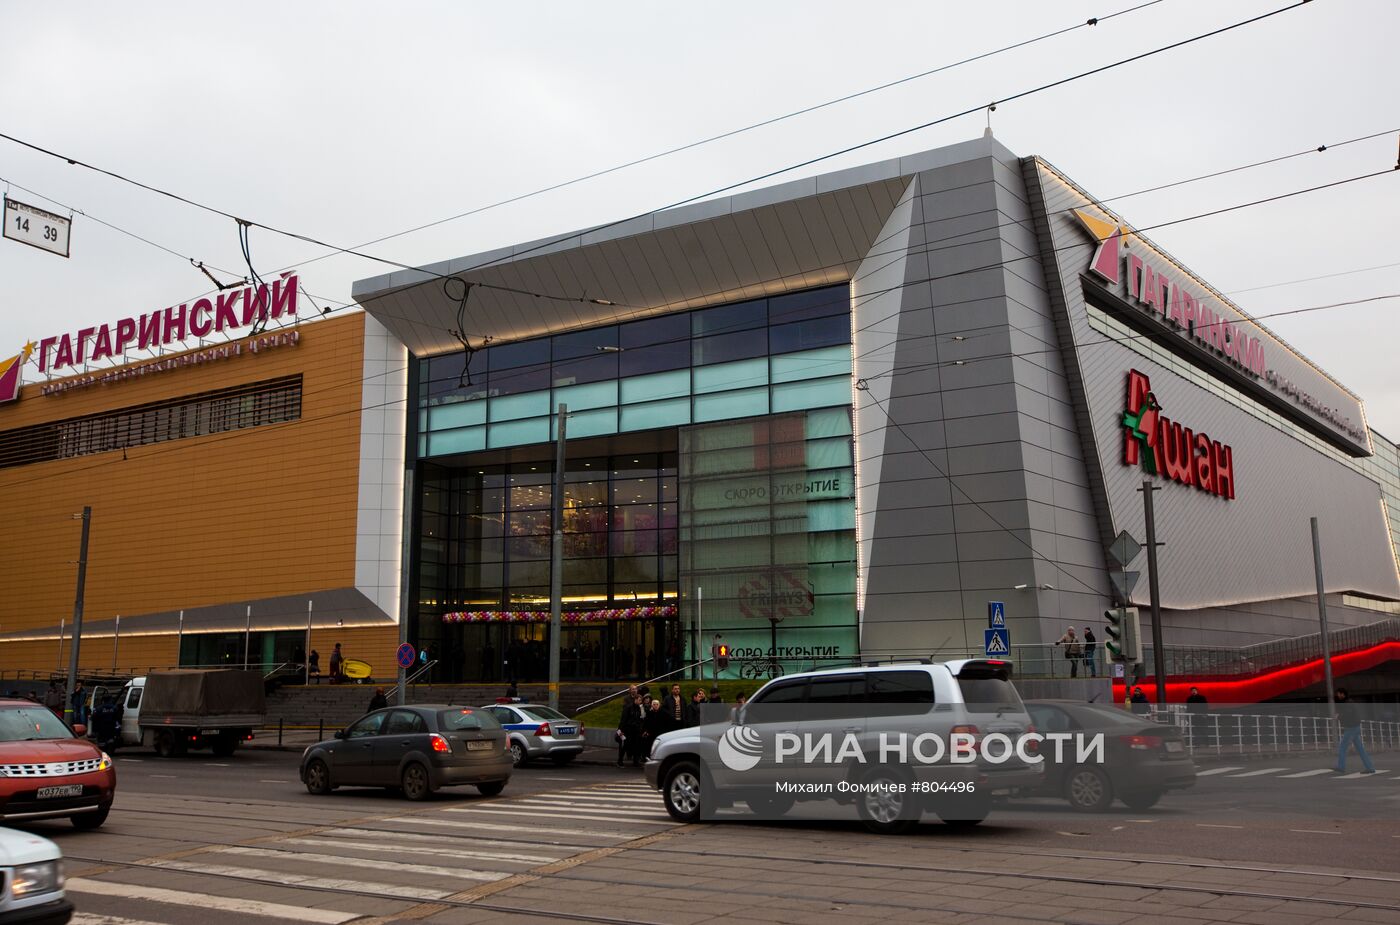 Открытие торгово-развлекательного центра "Гагаринский"